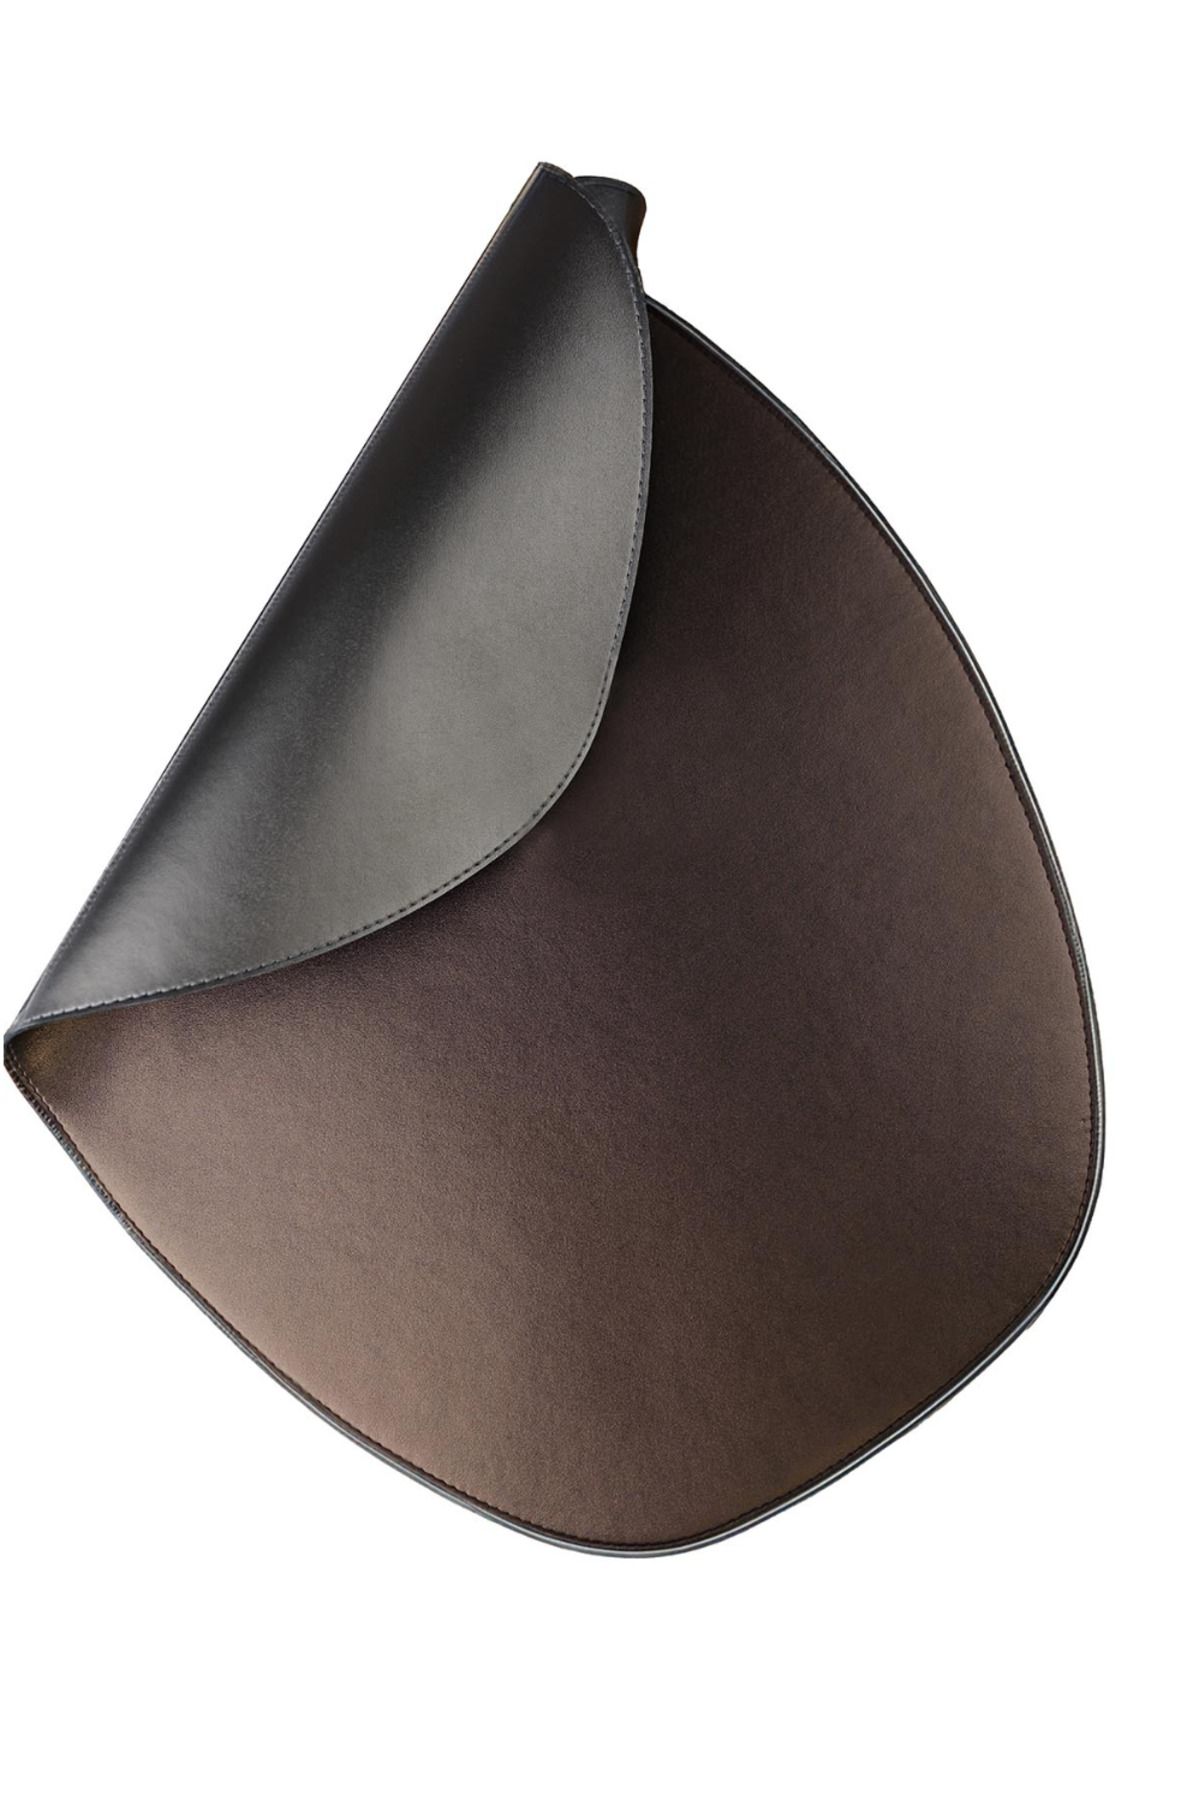 Kütahya Porselen Amerikan Servis Oval Metalik Gri/Bakır